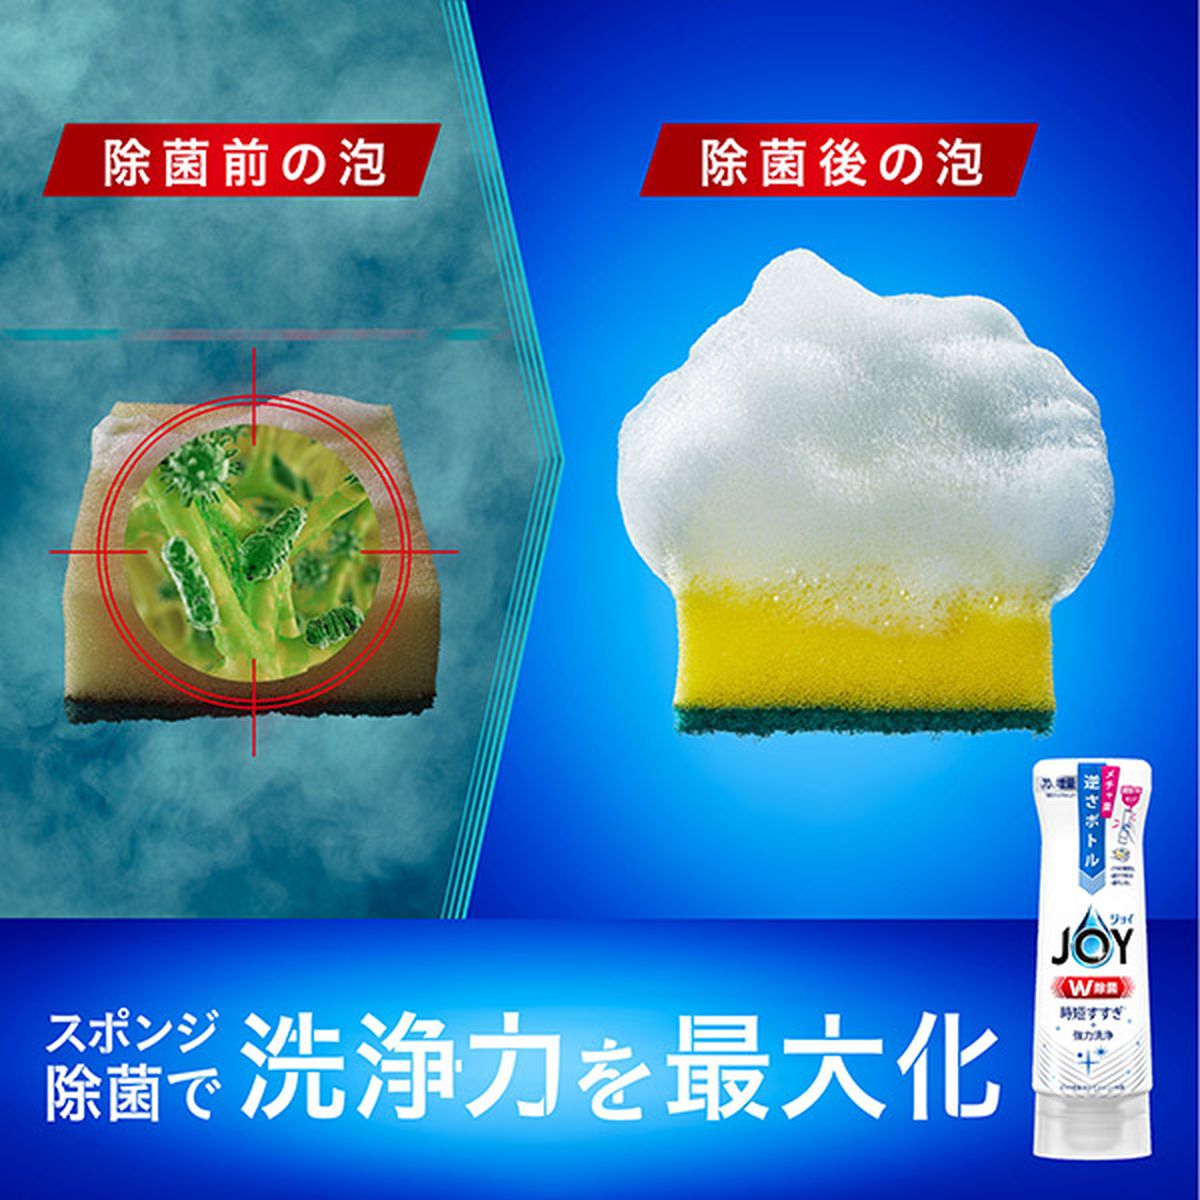 除菌ジョイコンパクト 緑茶の香り 詰め替え ジャンボサイズ 1425ml×6袋